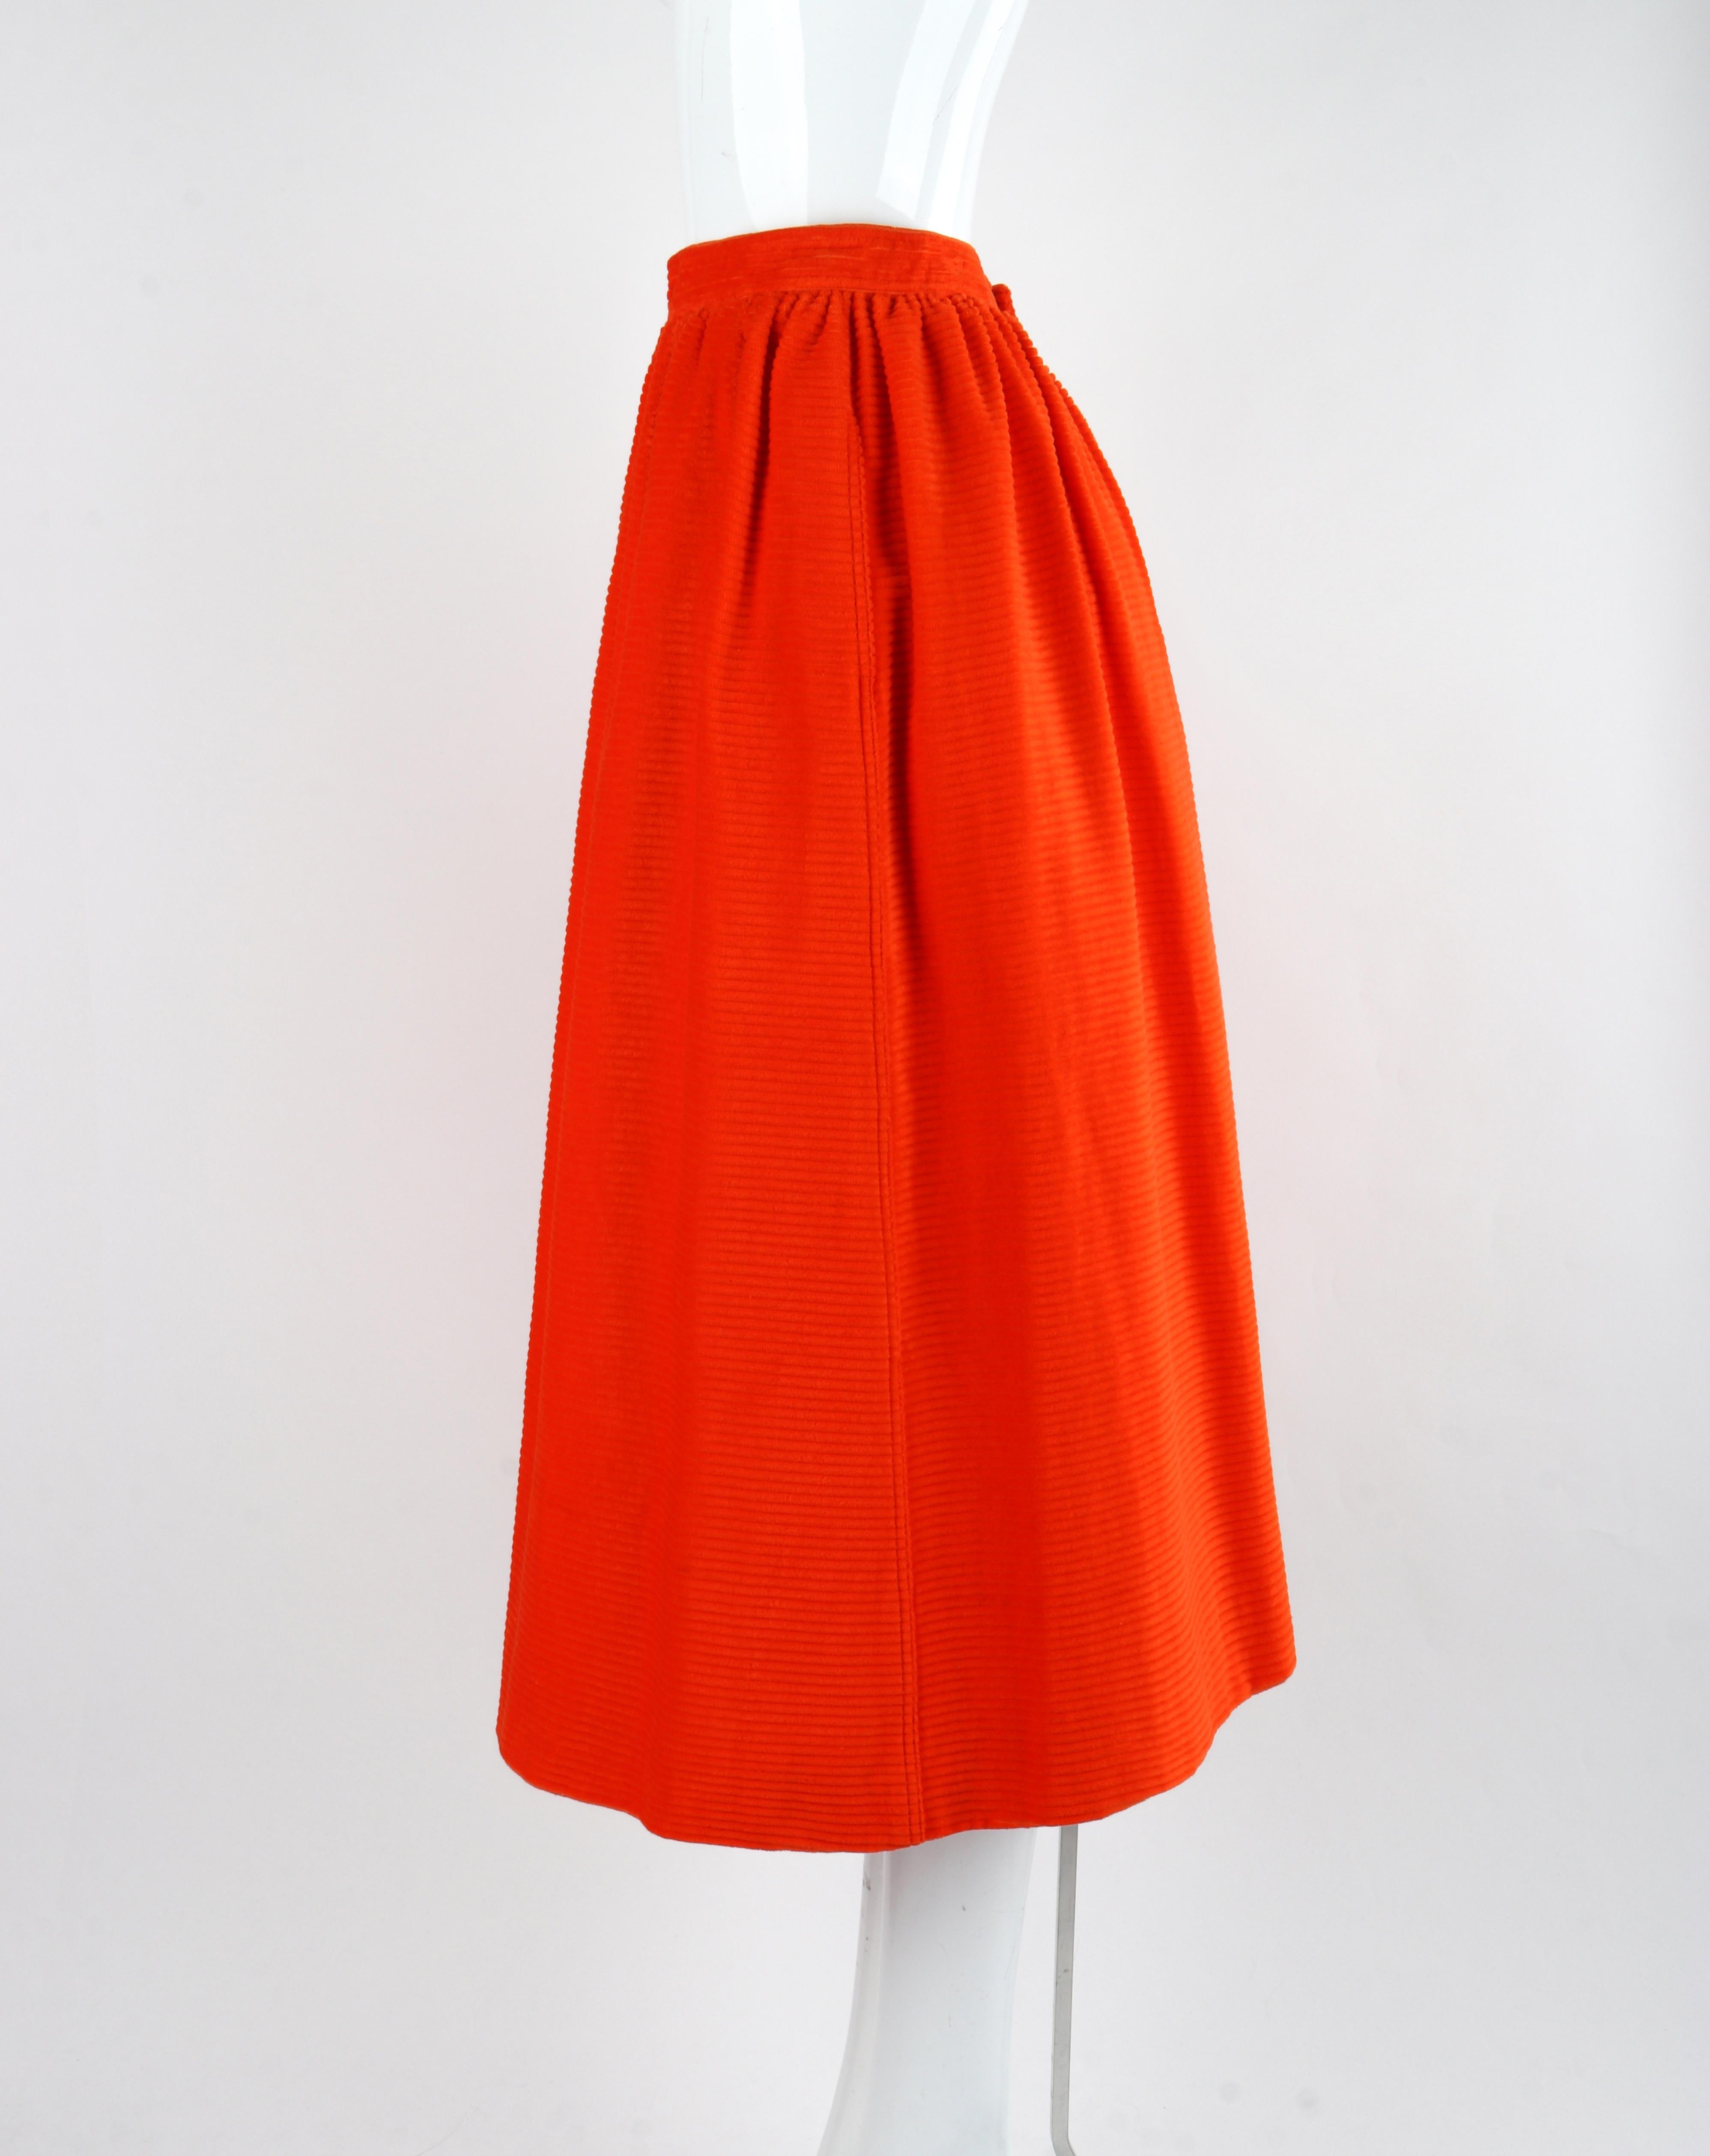 COURREGES c.1970's Orange Corduroy Button Up Jacket Blazer Skirt Suit Set w/Tags For Sale 6